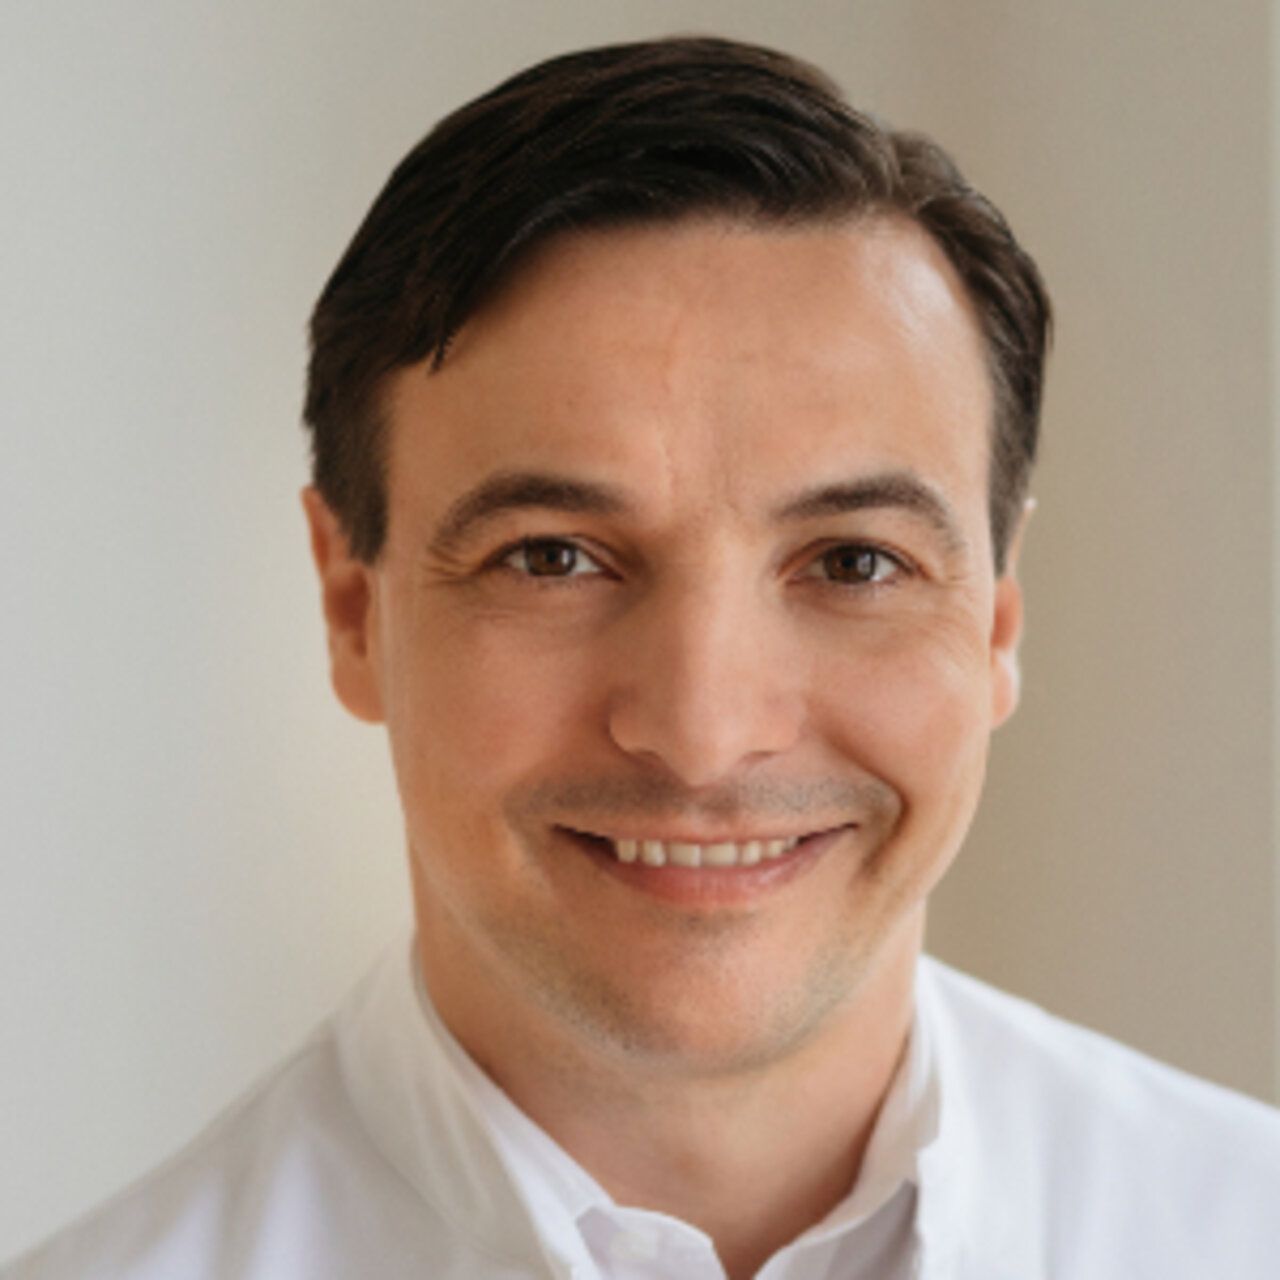 Spezialist für Kniechirurgie PD Dr. med. Christoph Becher - Portrait